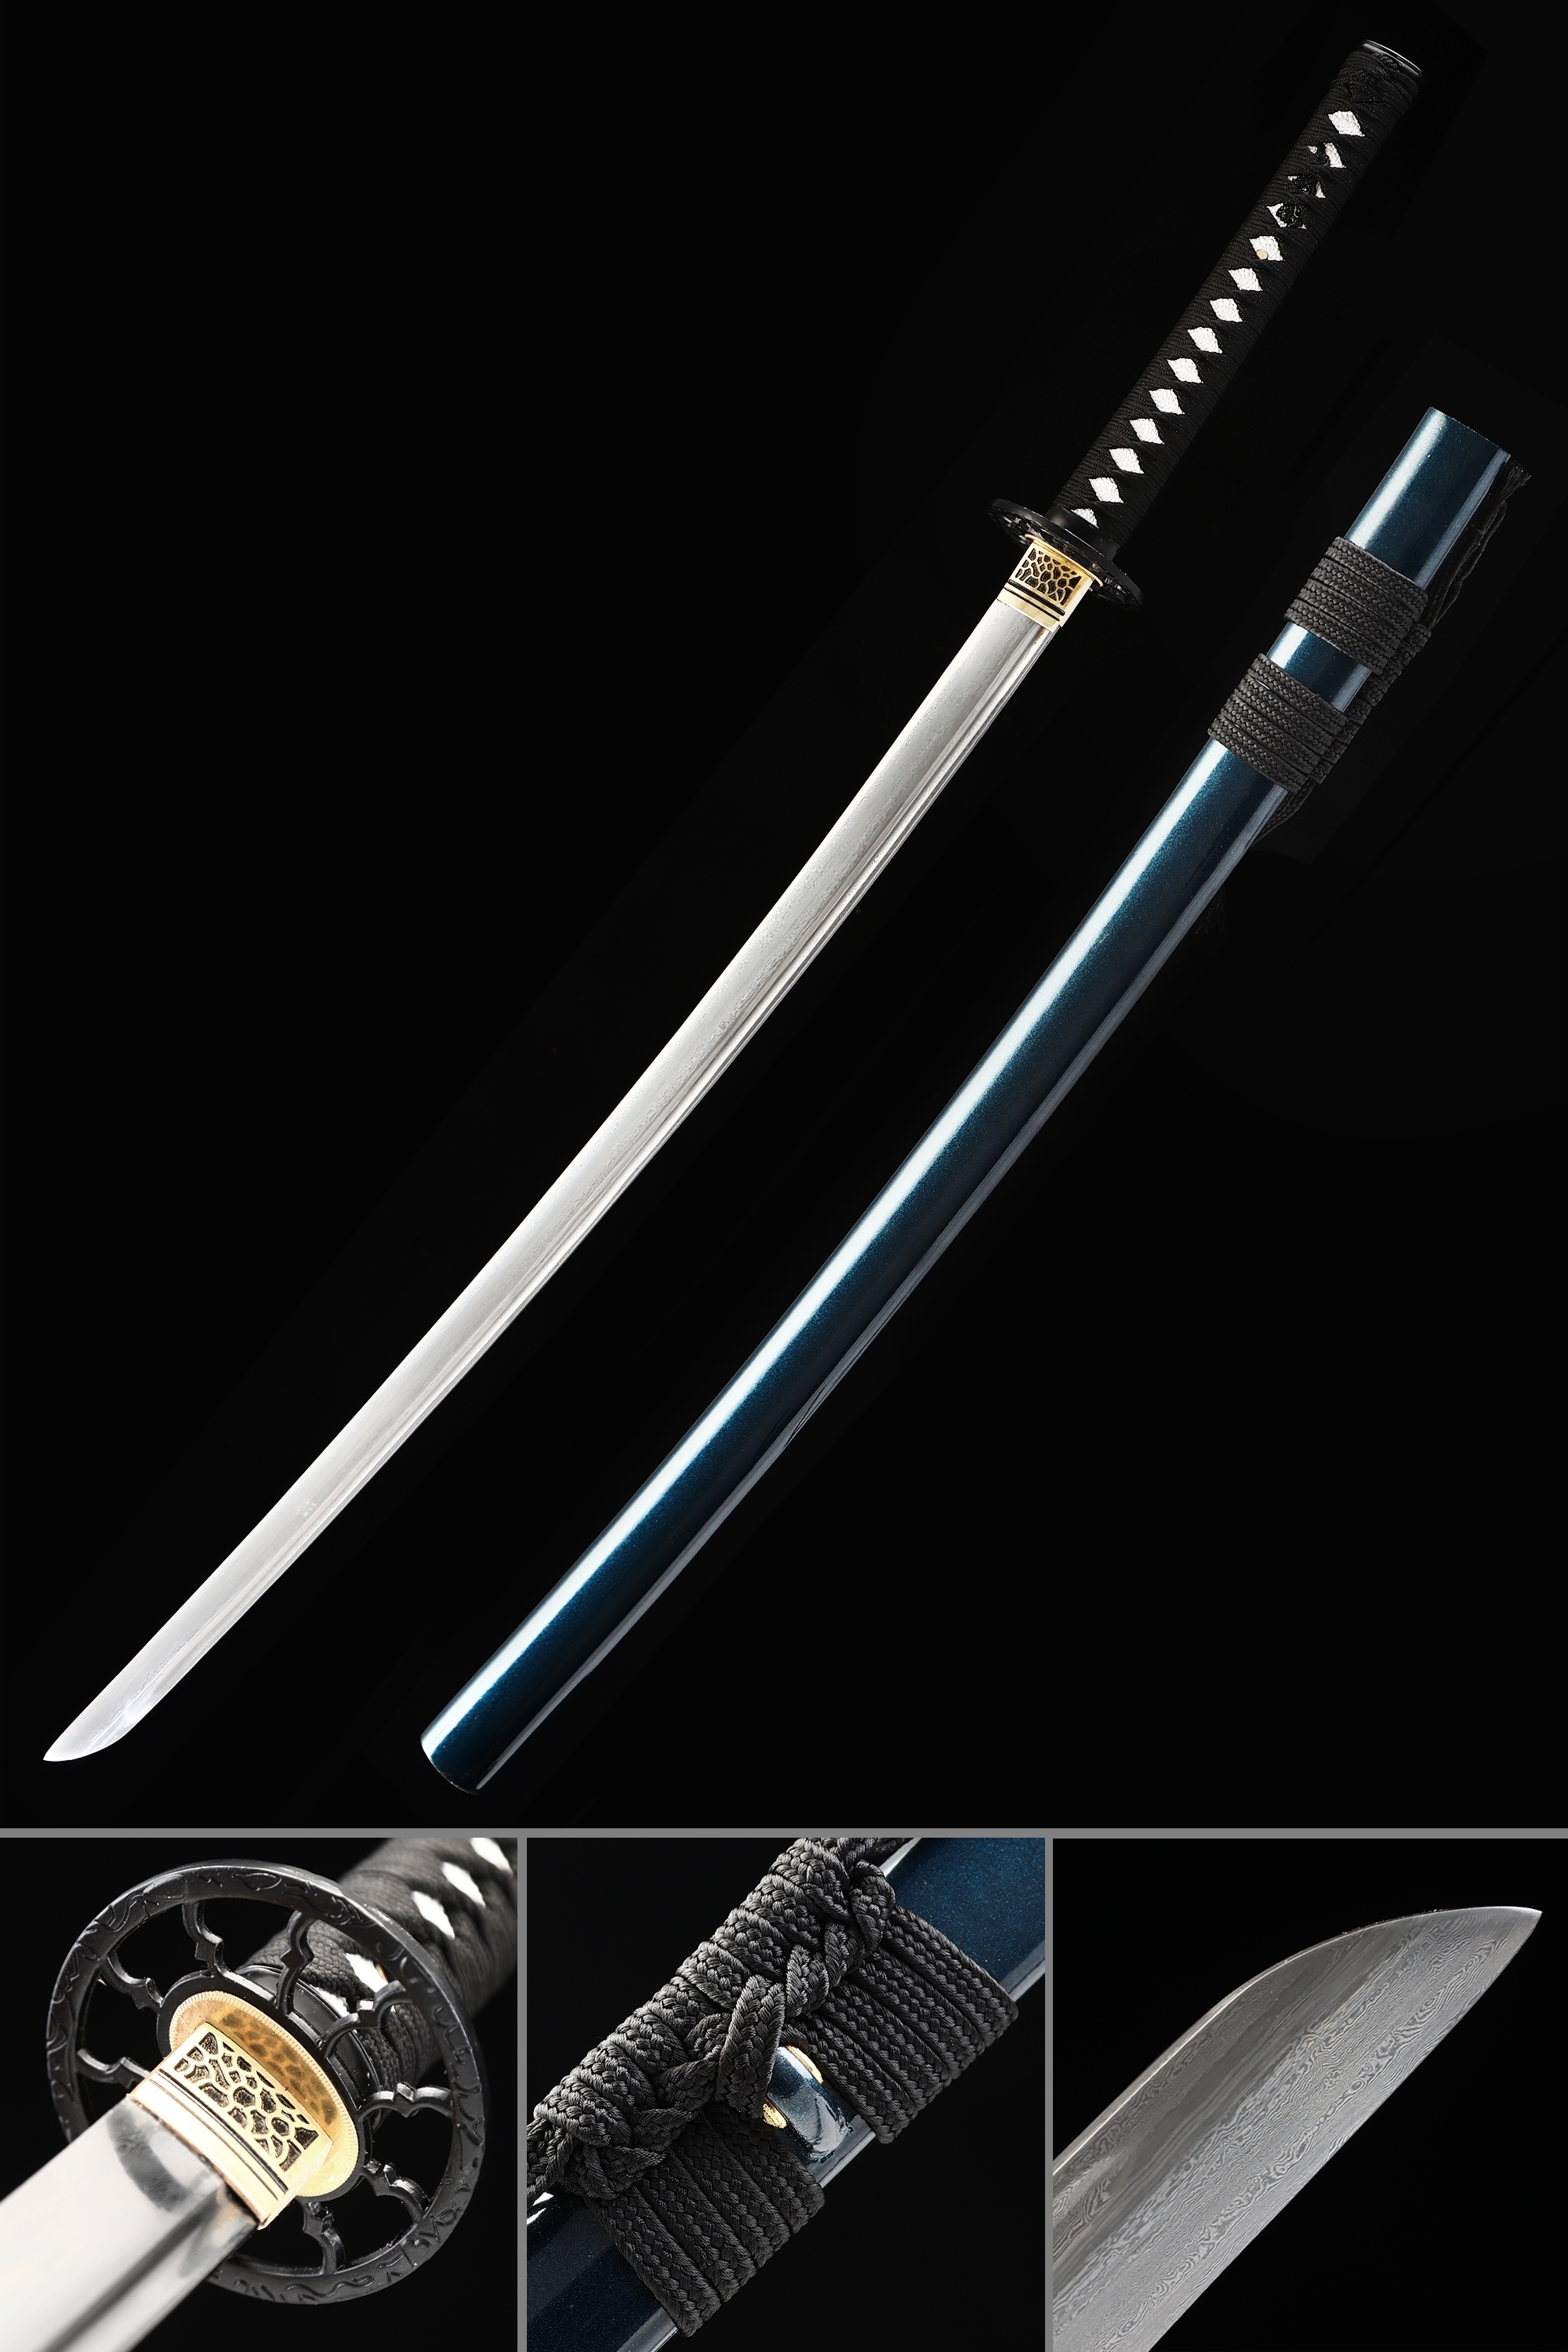 Sakabatō, Rurouni Kenshin Wiki